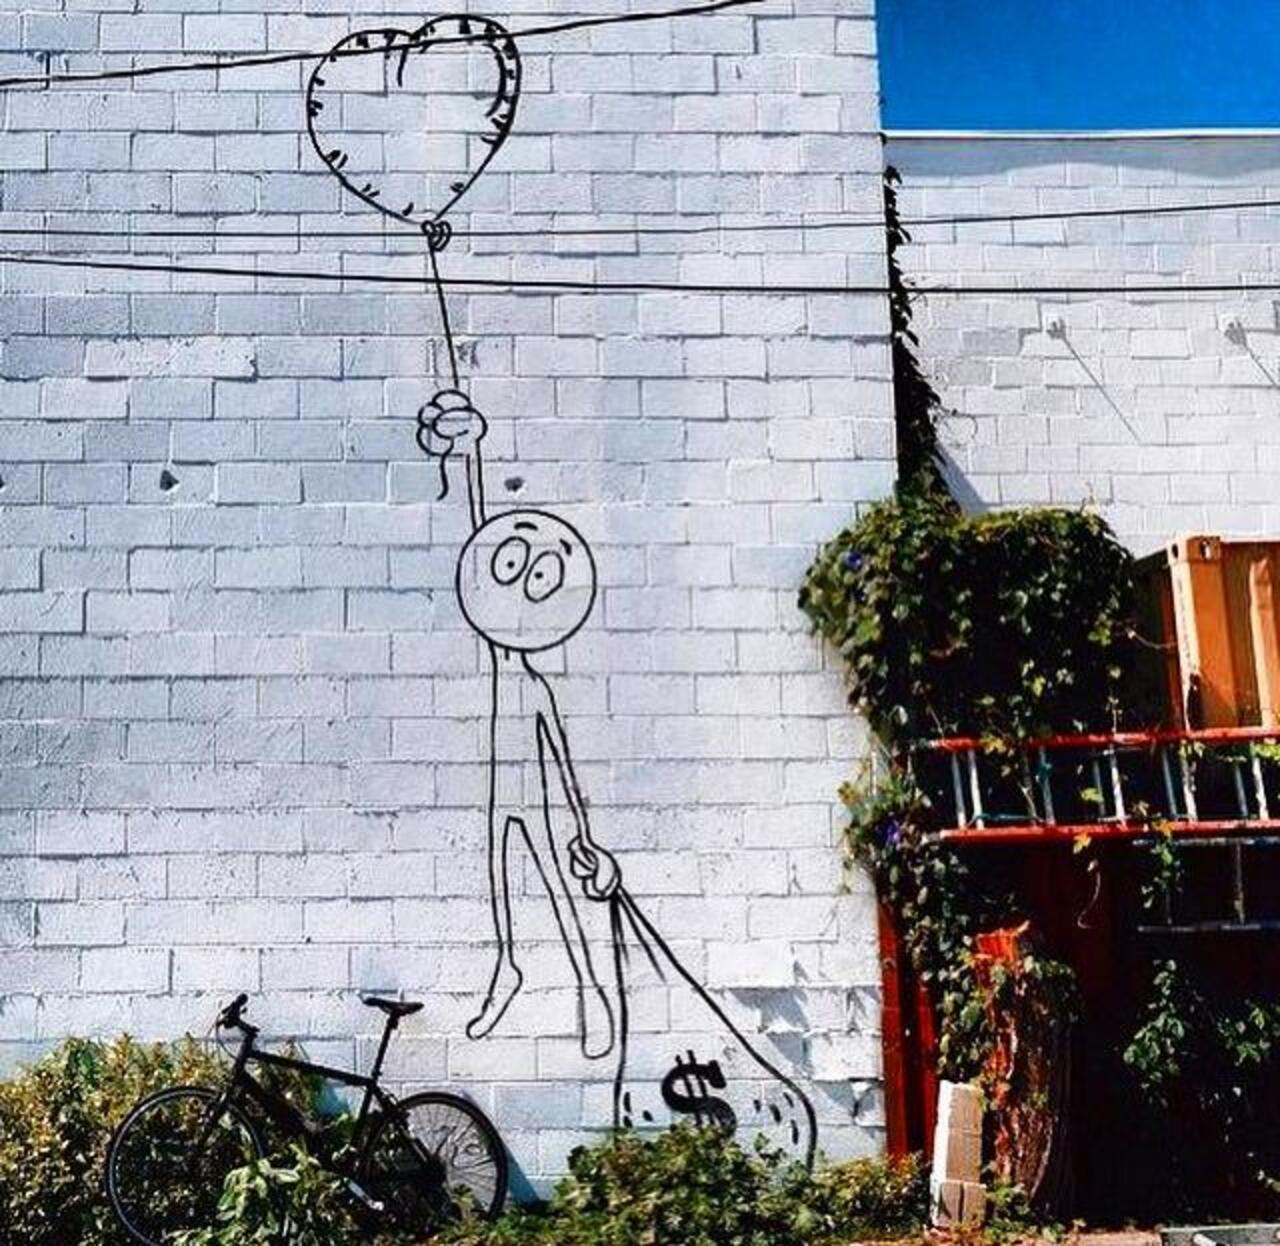 Love or money?
Street Art by Kaia Spire in LA 

#art #arte #graffiti #streetart http://t.co/TxXI9Ux3Mo